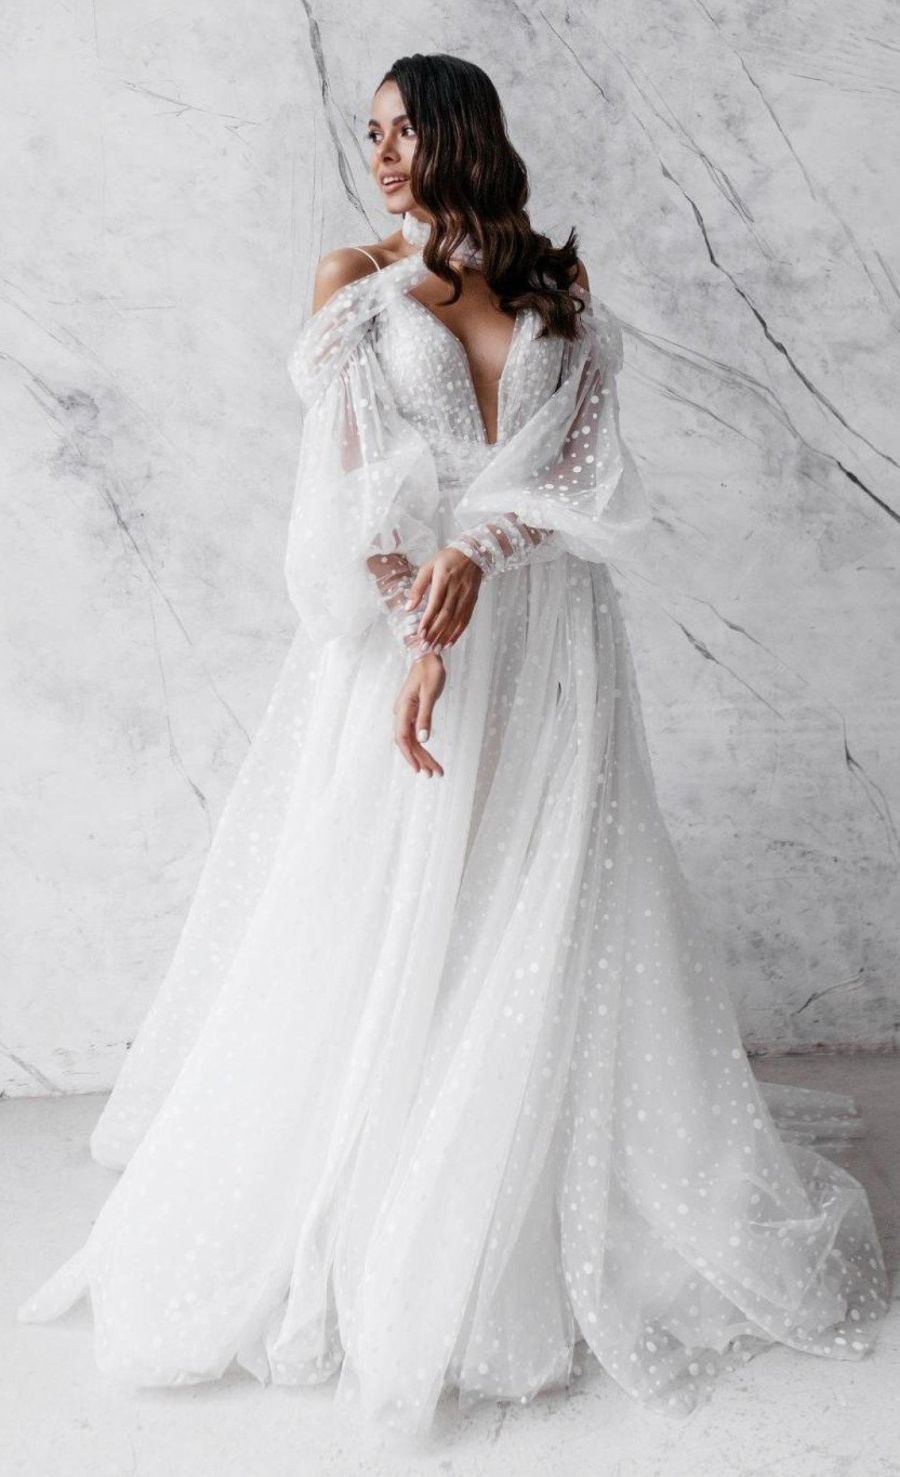 Чем и как обшить свадебное платье, чтобы поразить всех гостей его оригинальностью?